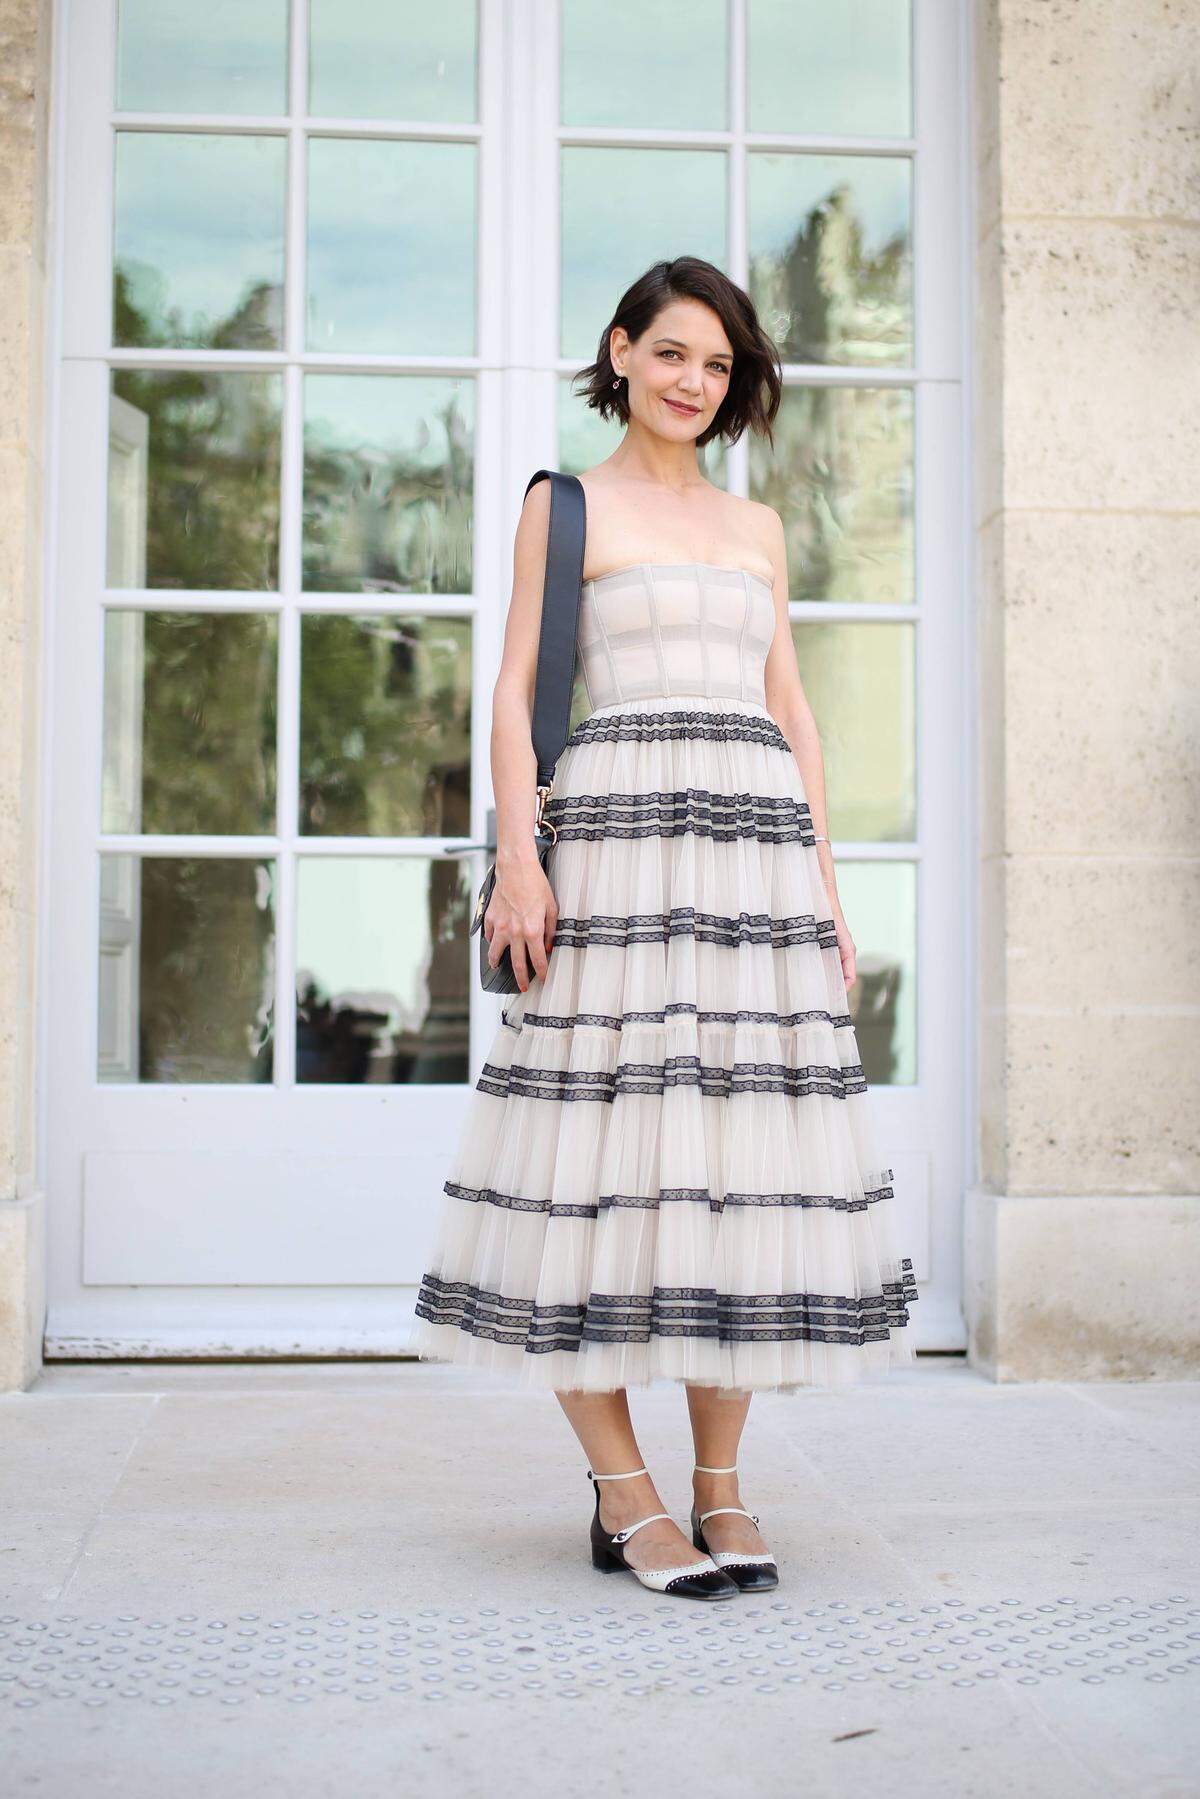 Die Haute Couture Schauen zelebrieren die hohe Schneiderkunst in Paris. Schauspielerin Katie Holmes hatte bei der Show von Dior 2018 allerdings ein Kleid an, das zwar gut aussah, aber am Körper der damals 39-Jährigen weniger gut saß.